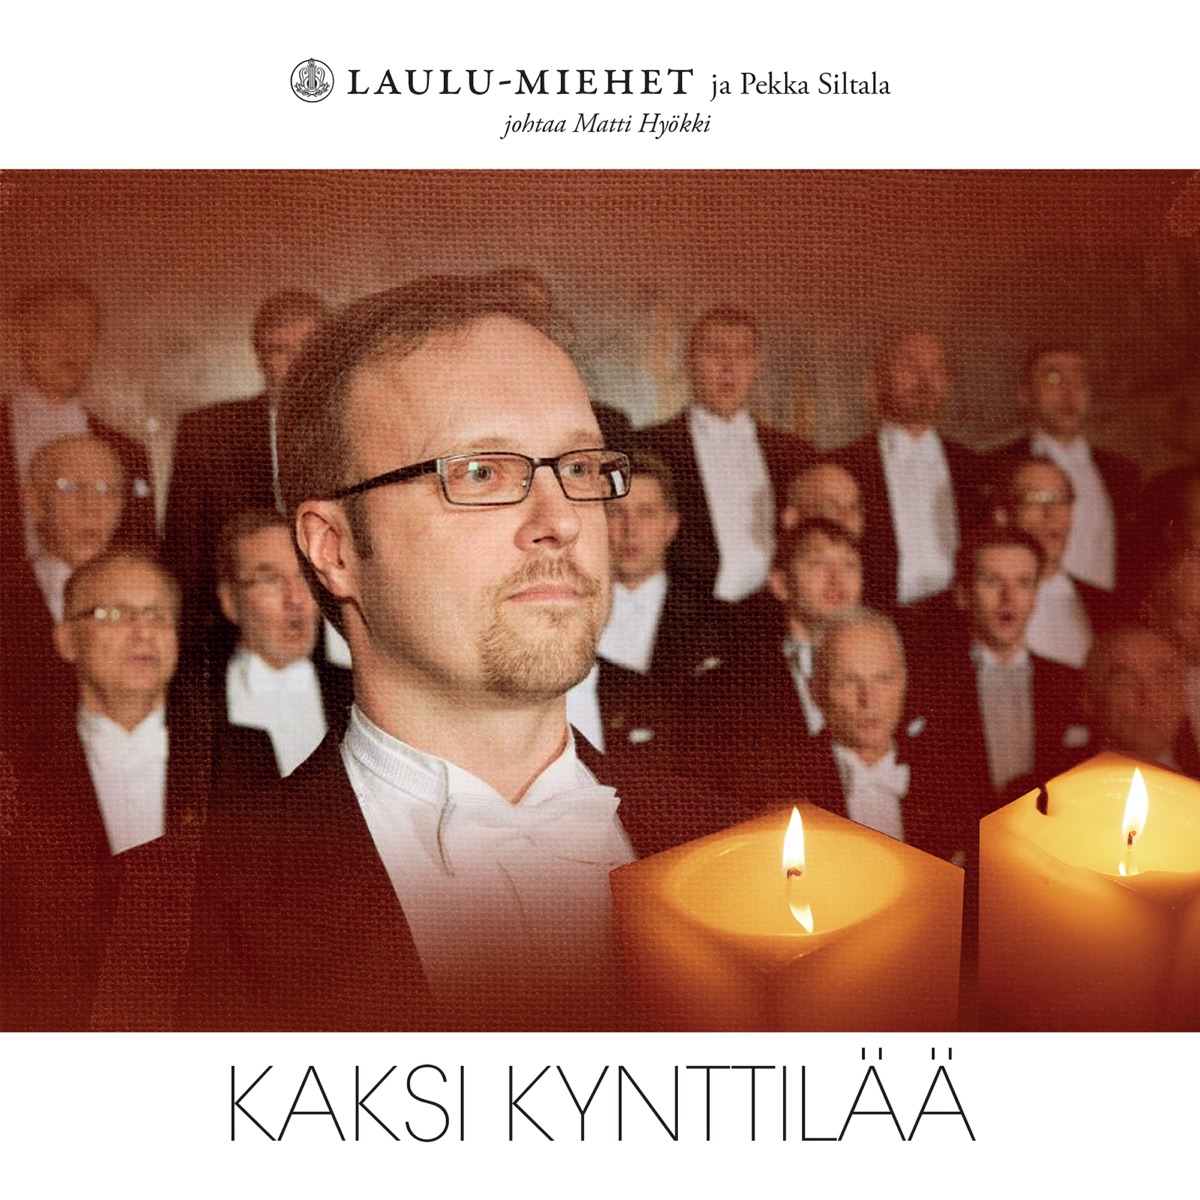 Kaksi Kynttilää - Single - Album by Laulu-Miehet - Apple Music